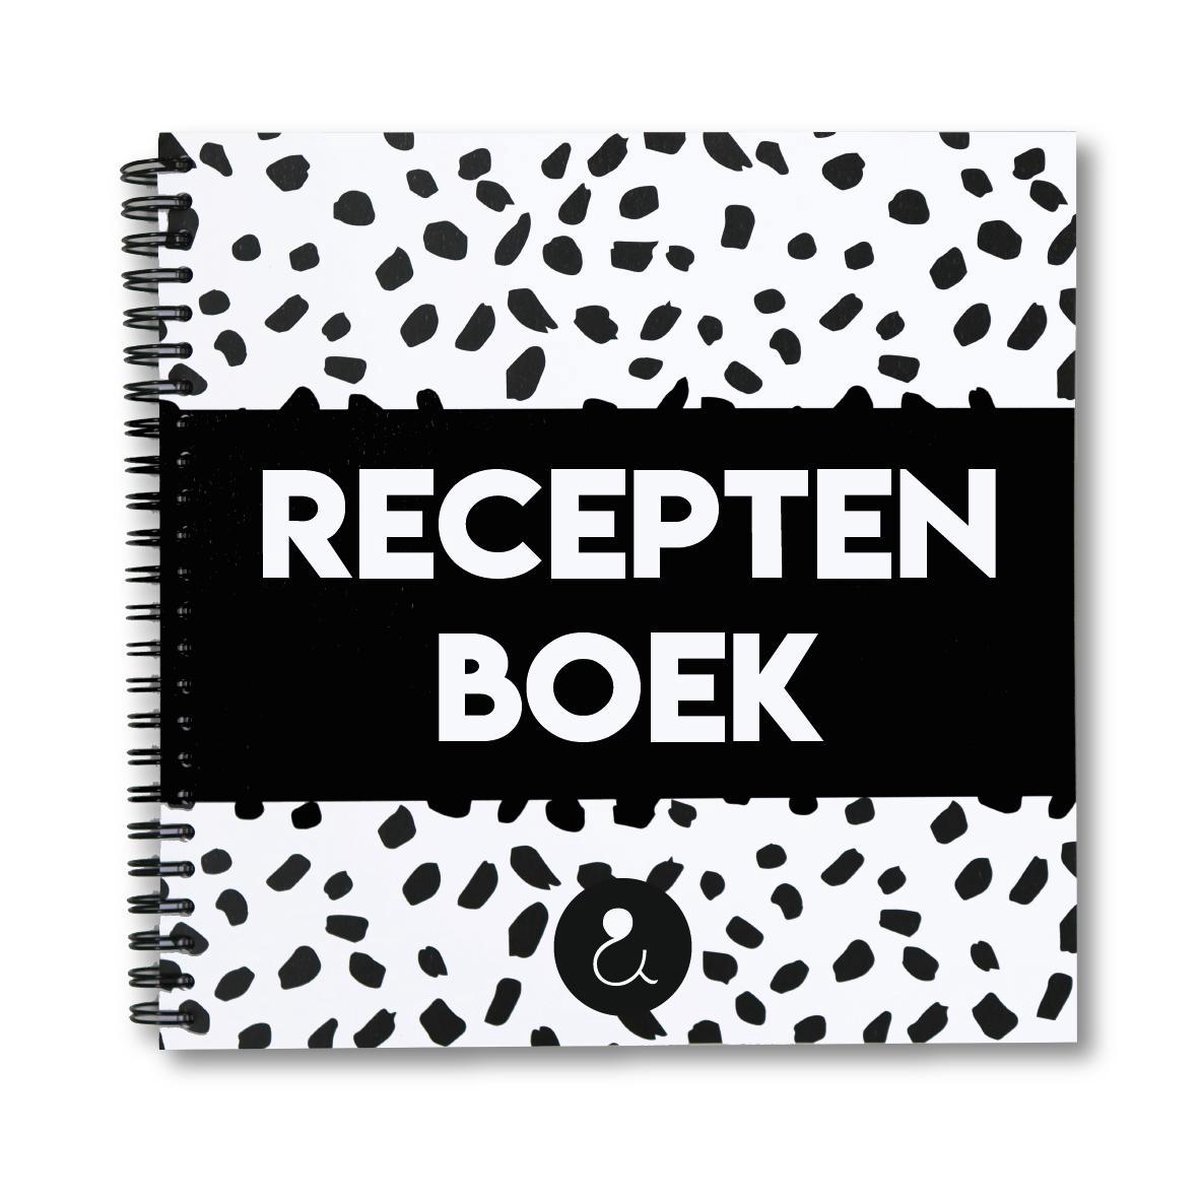 Receptenboek invulboek - Recepten verzamelboek - Receptenboek - kookboek - recepten notitieboek - recepten invulboek - bakken - snoep - chocolade - chips - Studio Ins & Outs